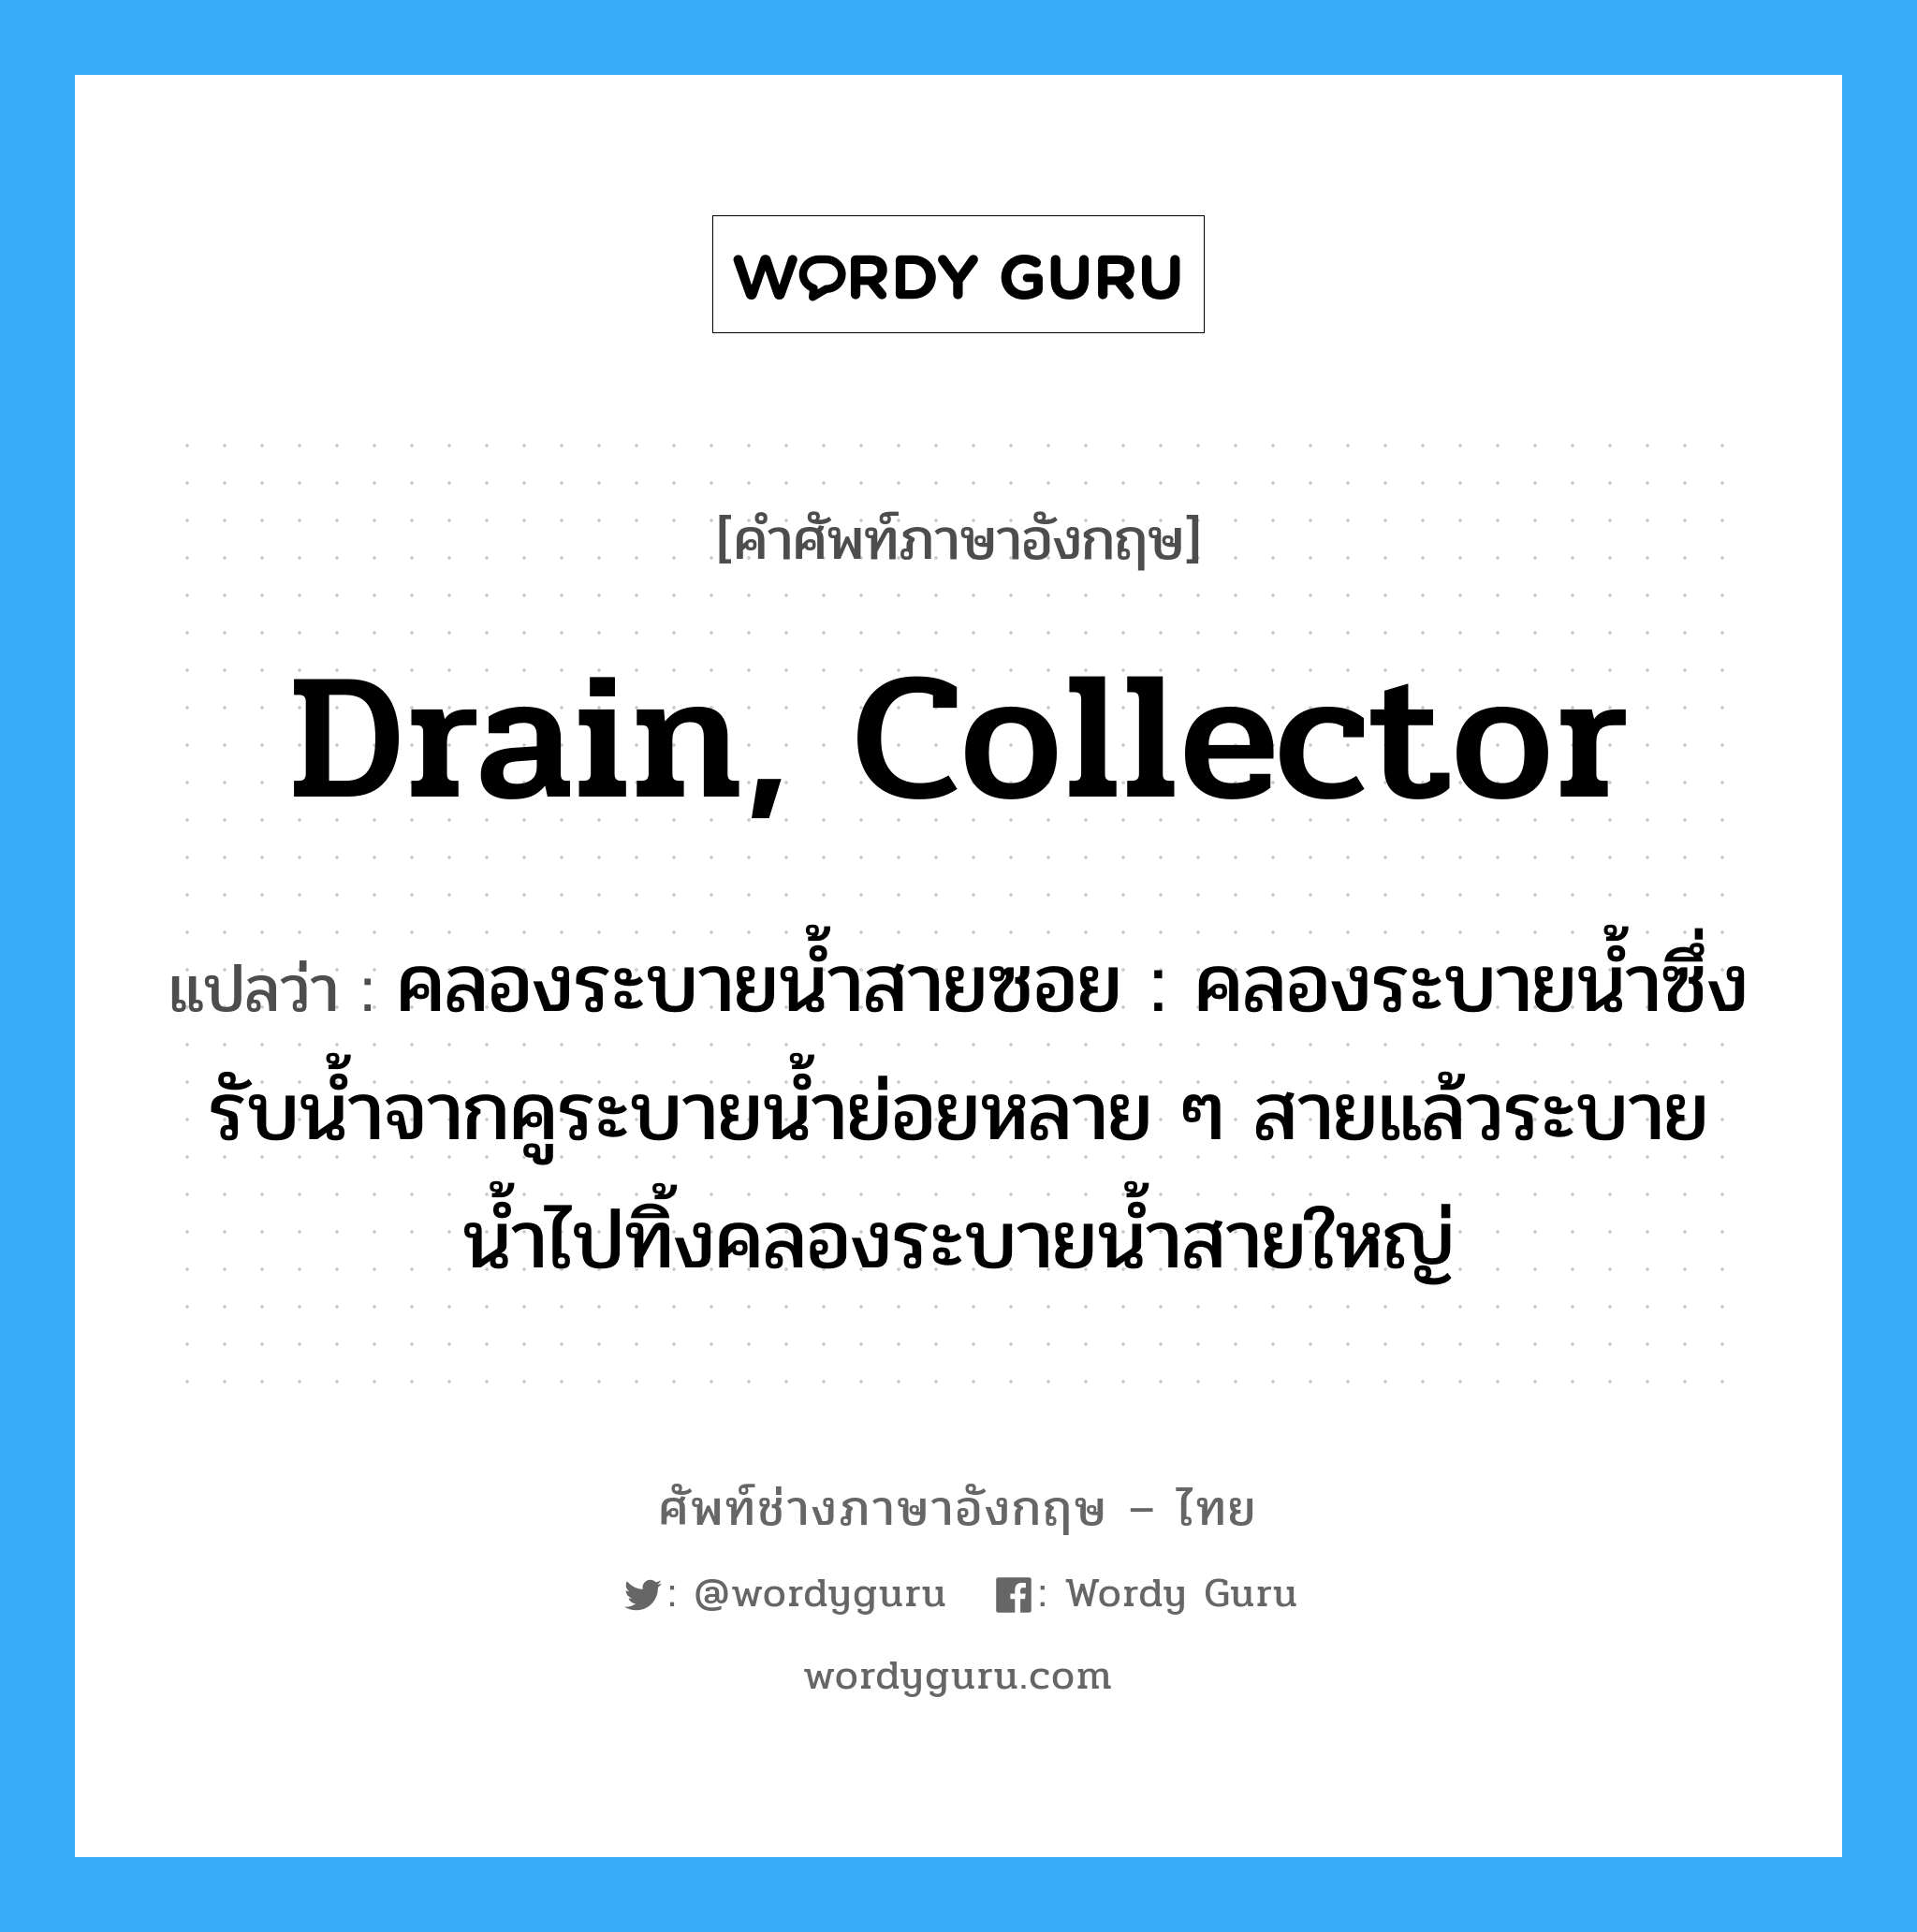 drain, collector แปลว่า?, คำศัพท์ช่างภาษาอังกฤษ - ไทย drain, collector คำศัพท์ภาษาอังกฤษ drain, collector แปลว่า คลองระบายน้ำสายซอย : คลองระบายน้ำซึ่งรับน้ำจากคูระบายน้ำย่อยหลาย ๆ สายแล้วระบายน้ำไปทิ้งคลองระบายน้ำสายใหญ่